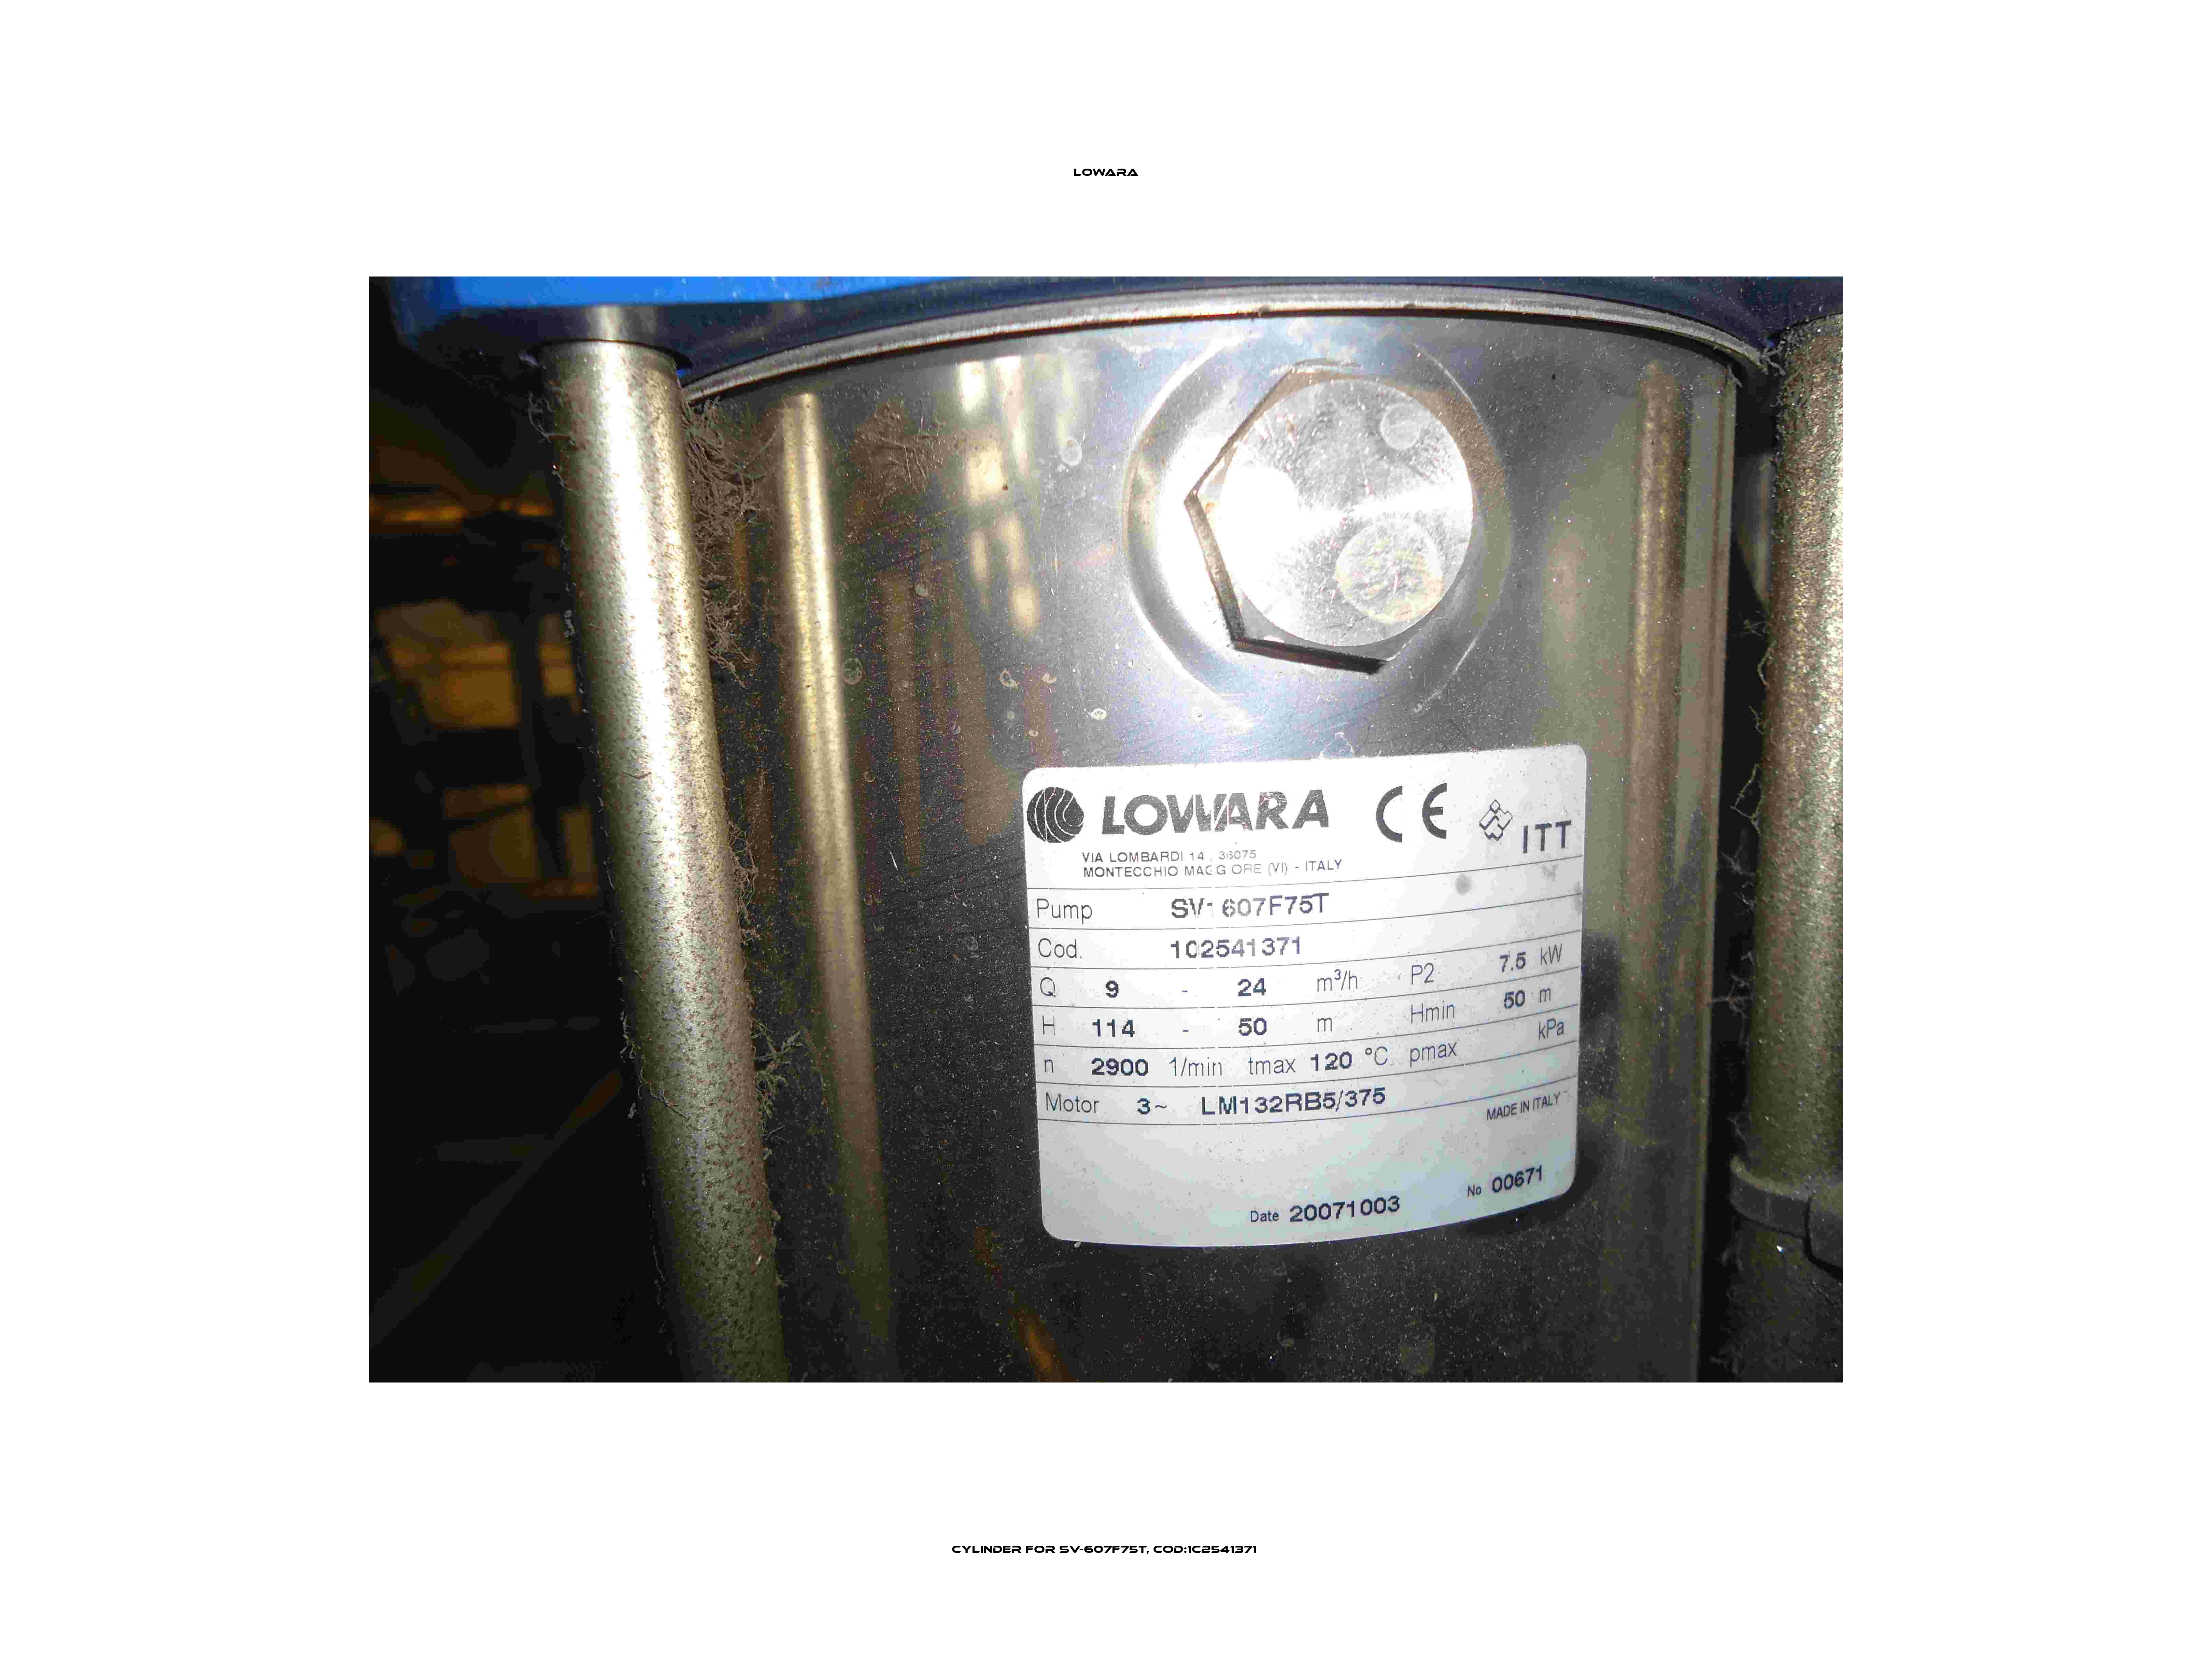 Cylinder for SV-607F75T, Cod:1C2541371  Lowara